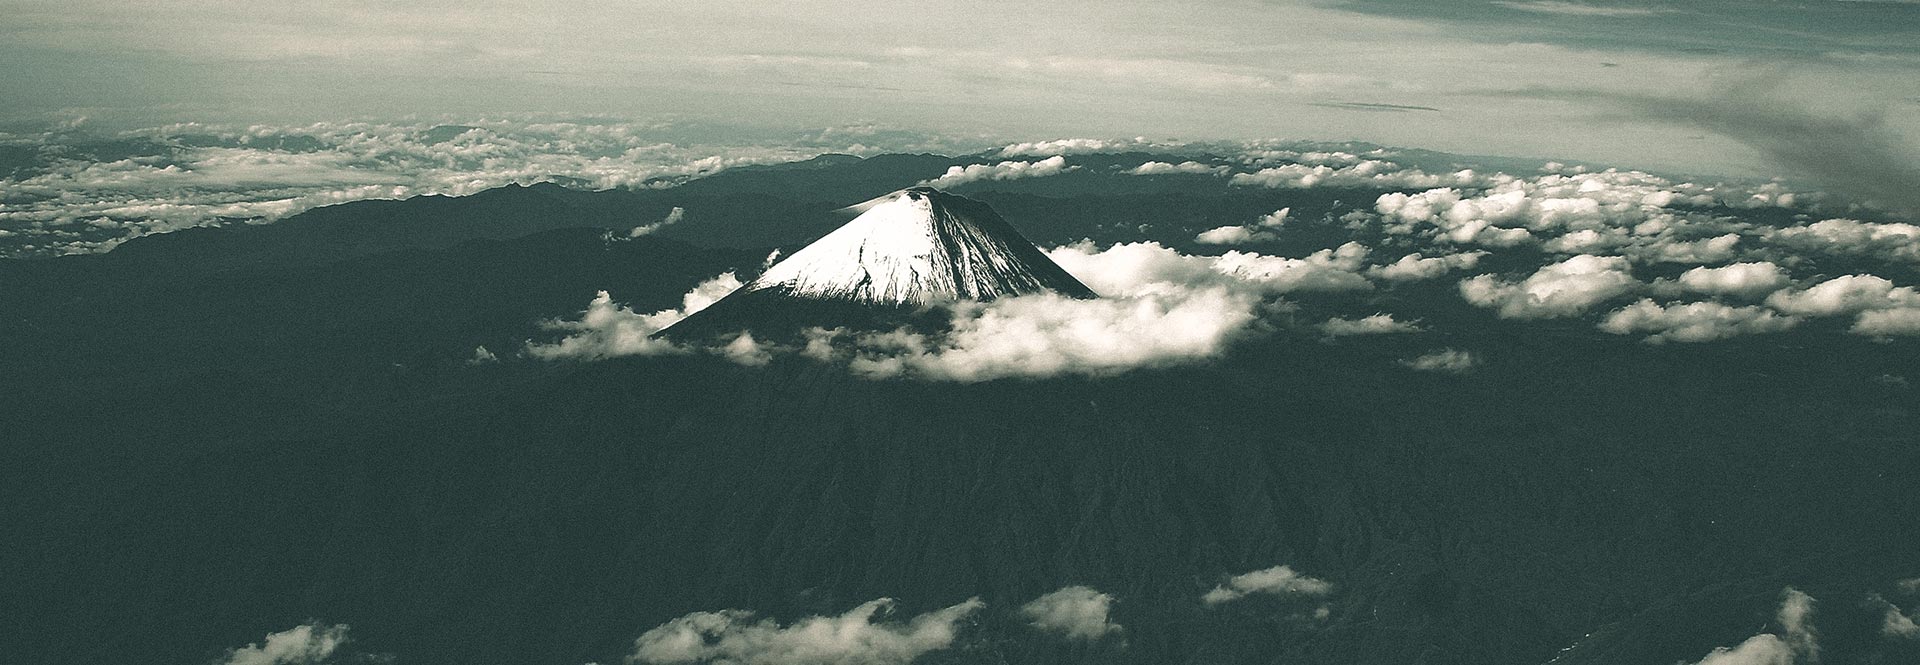 Mountain Climbing Ecuador Volcanoes